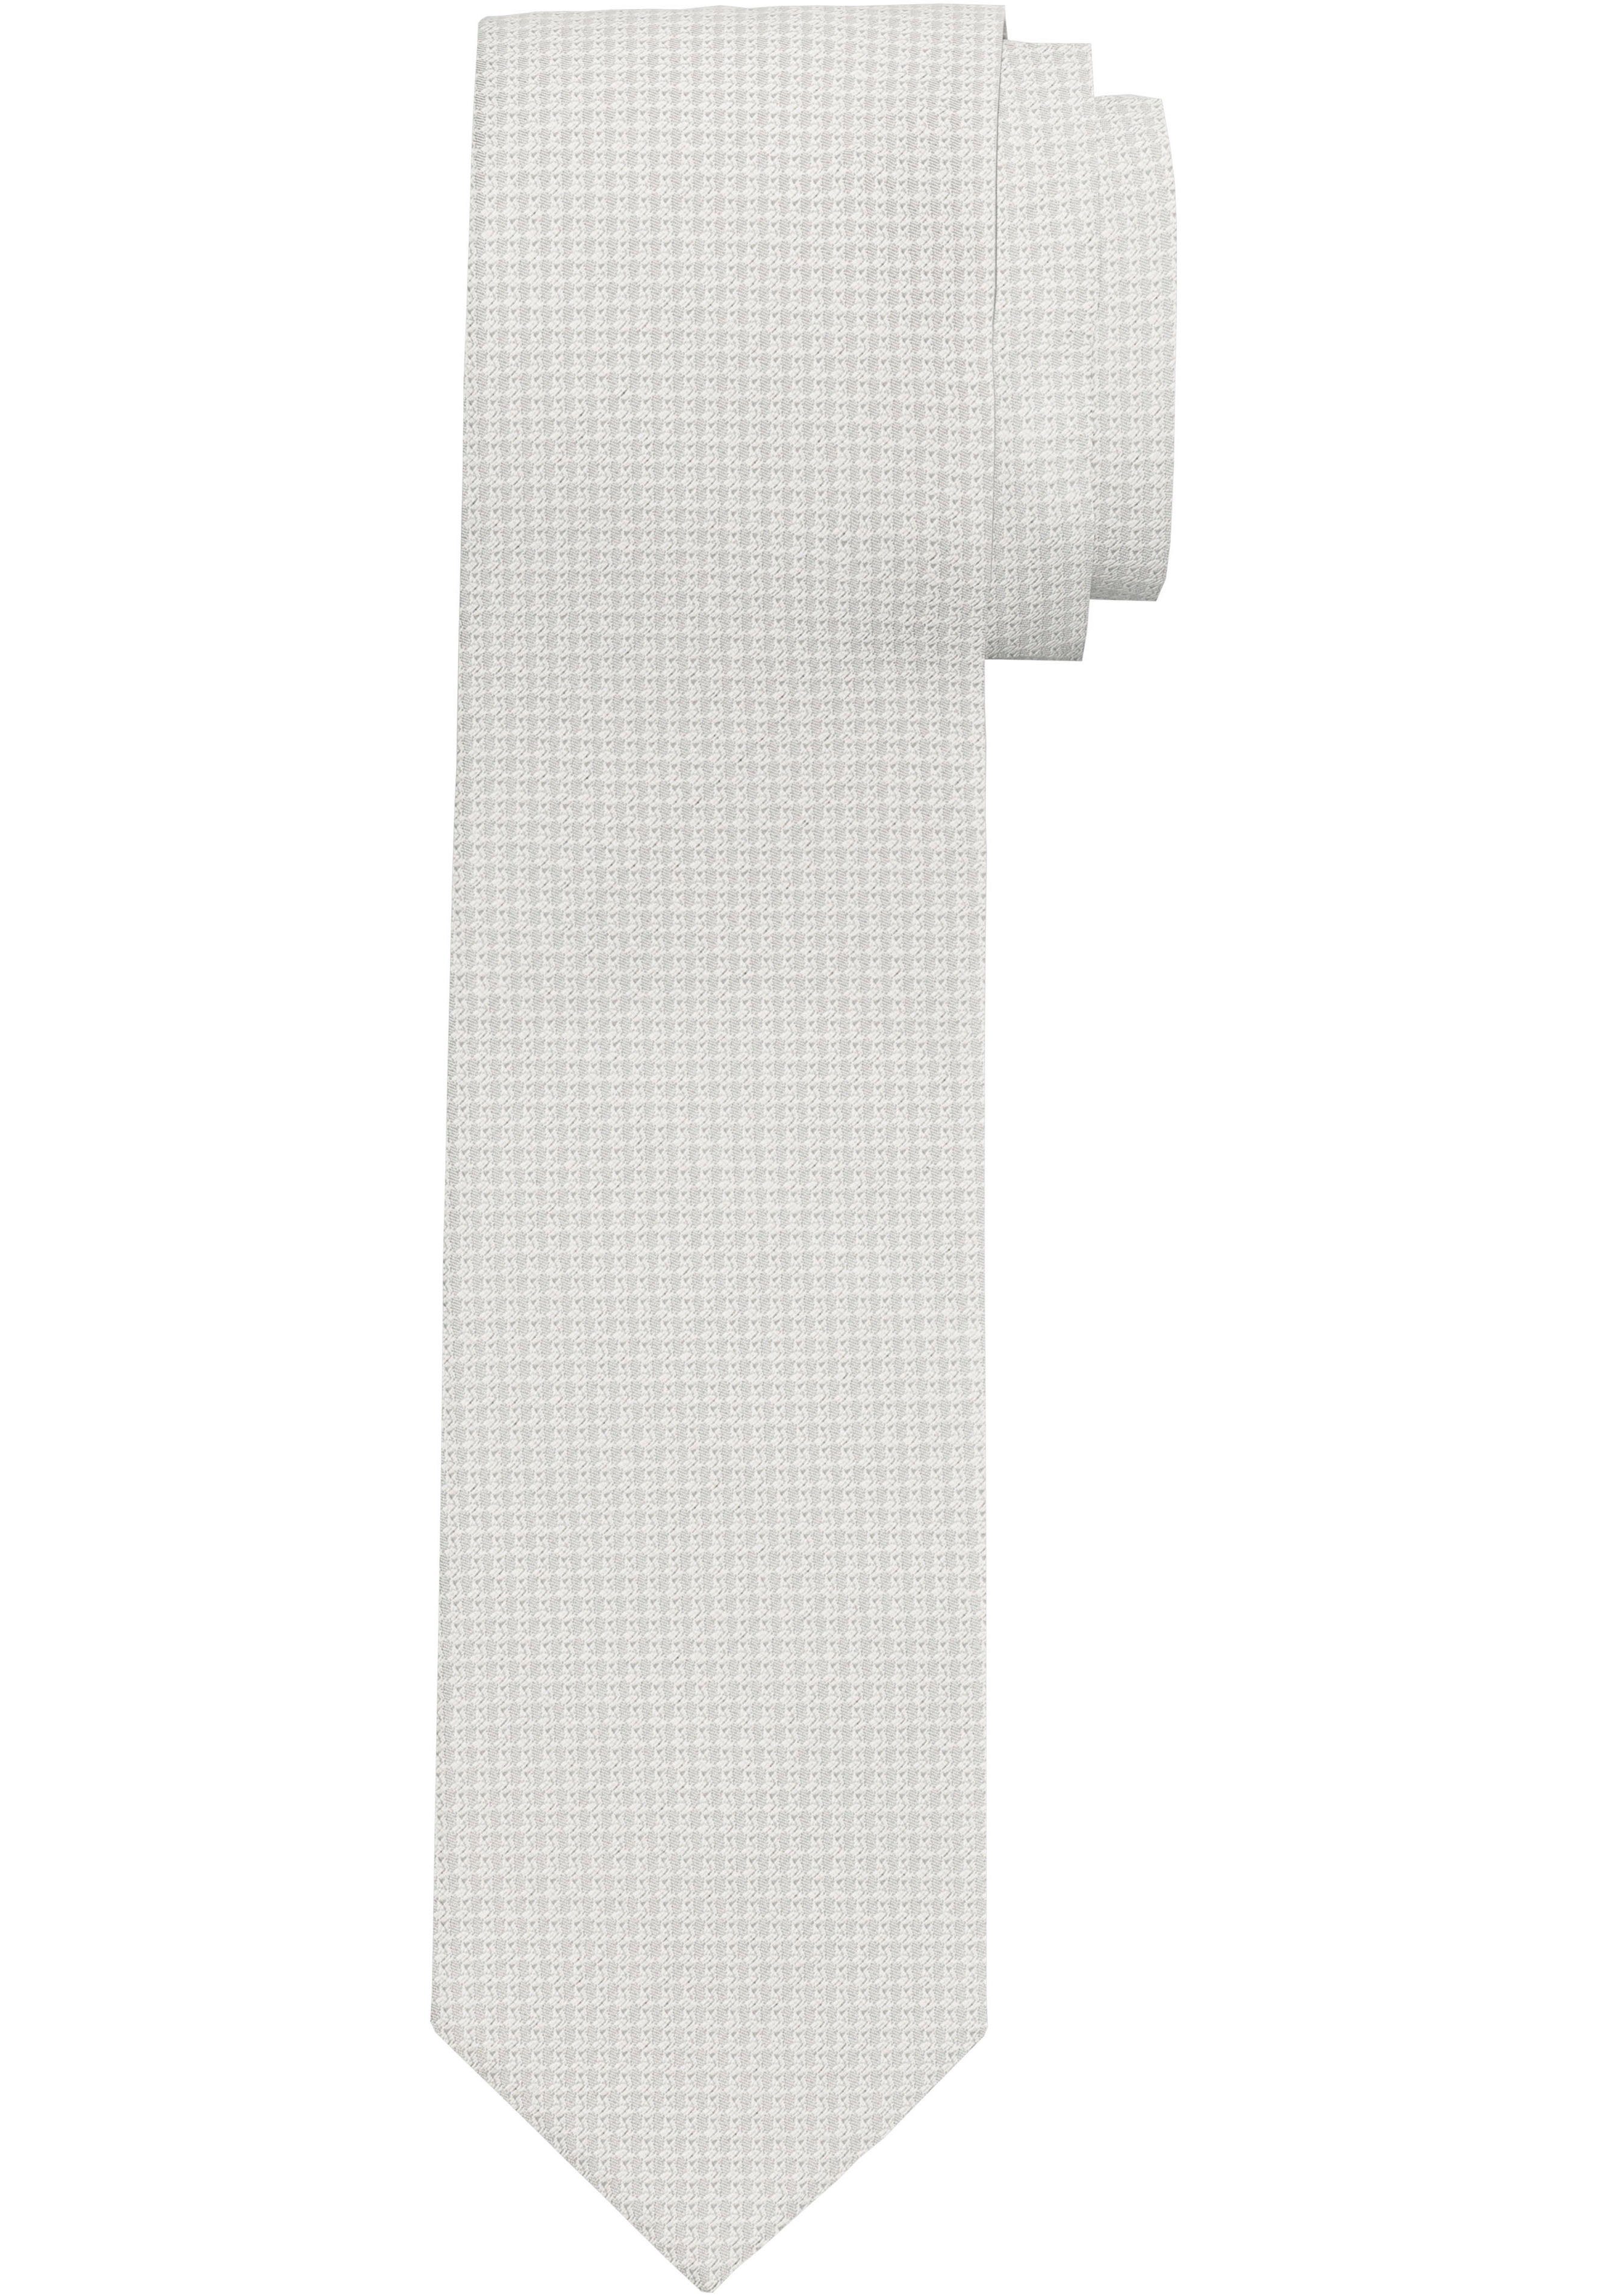 Krawatte OLYMP Minimalmuster mit champagner Krawatte